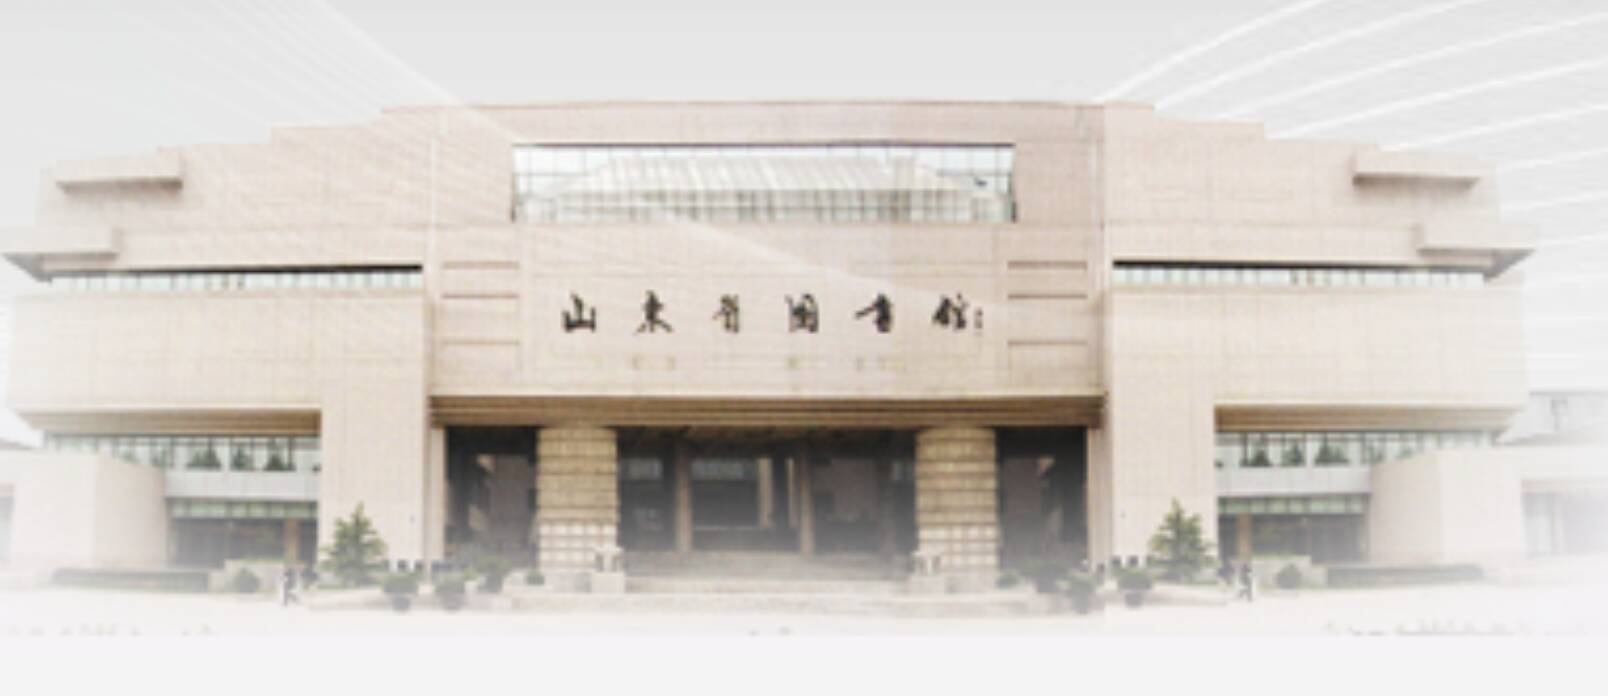 山东省图书馆12月7日恢复开放